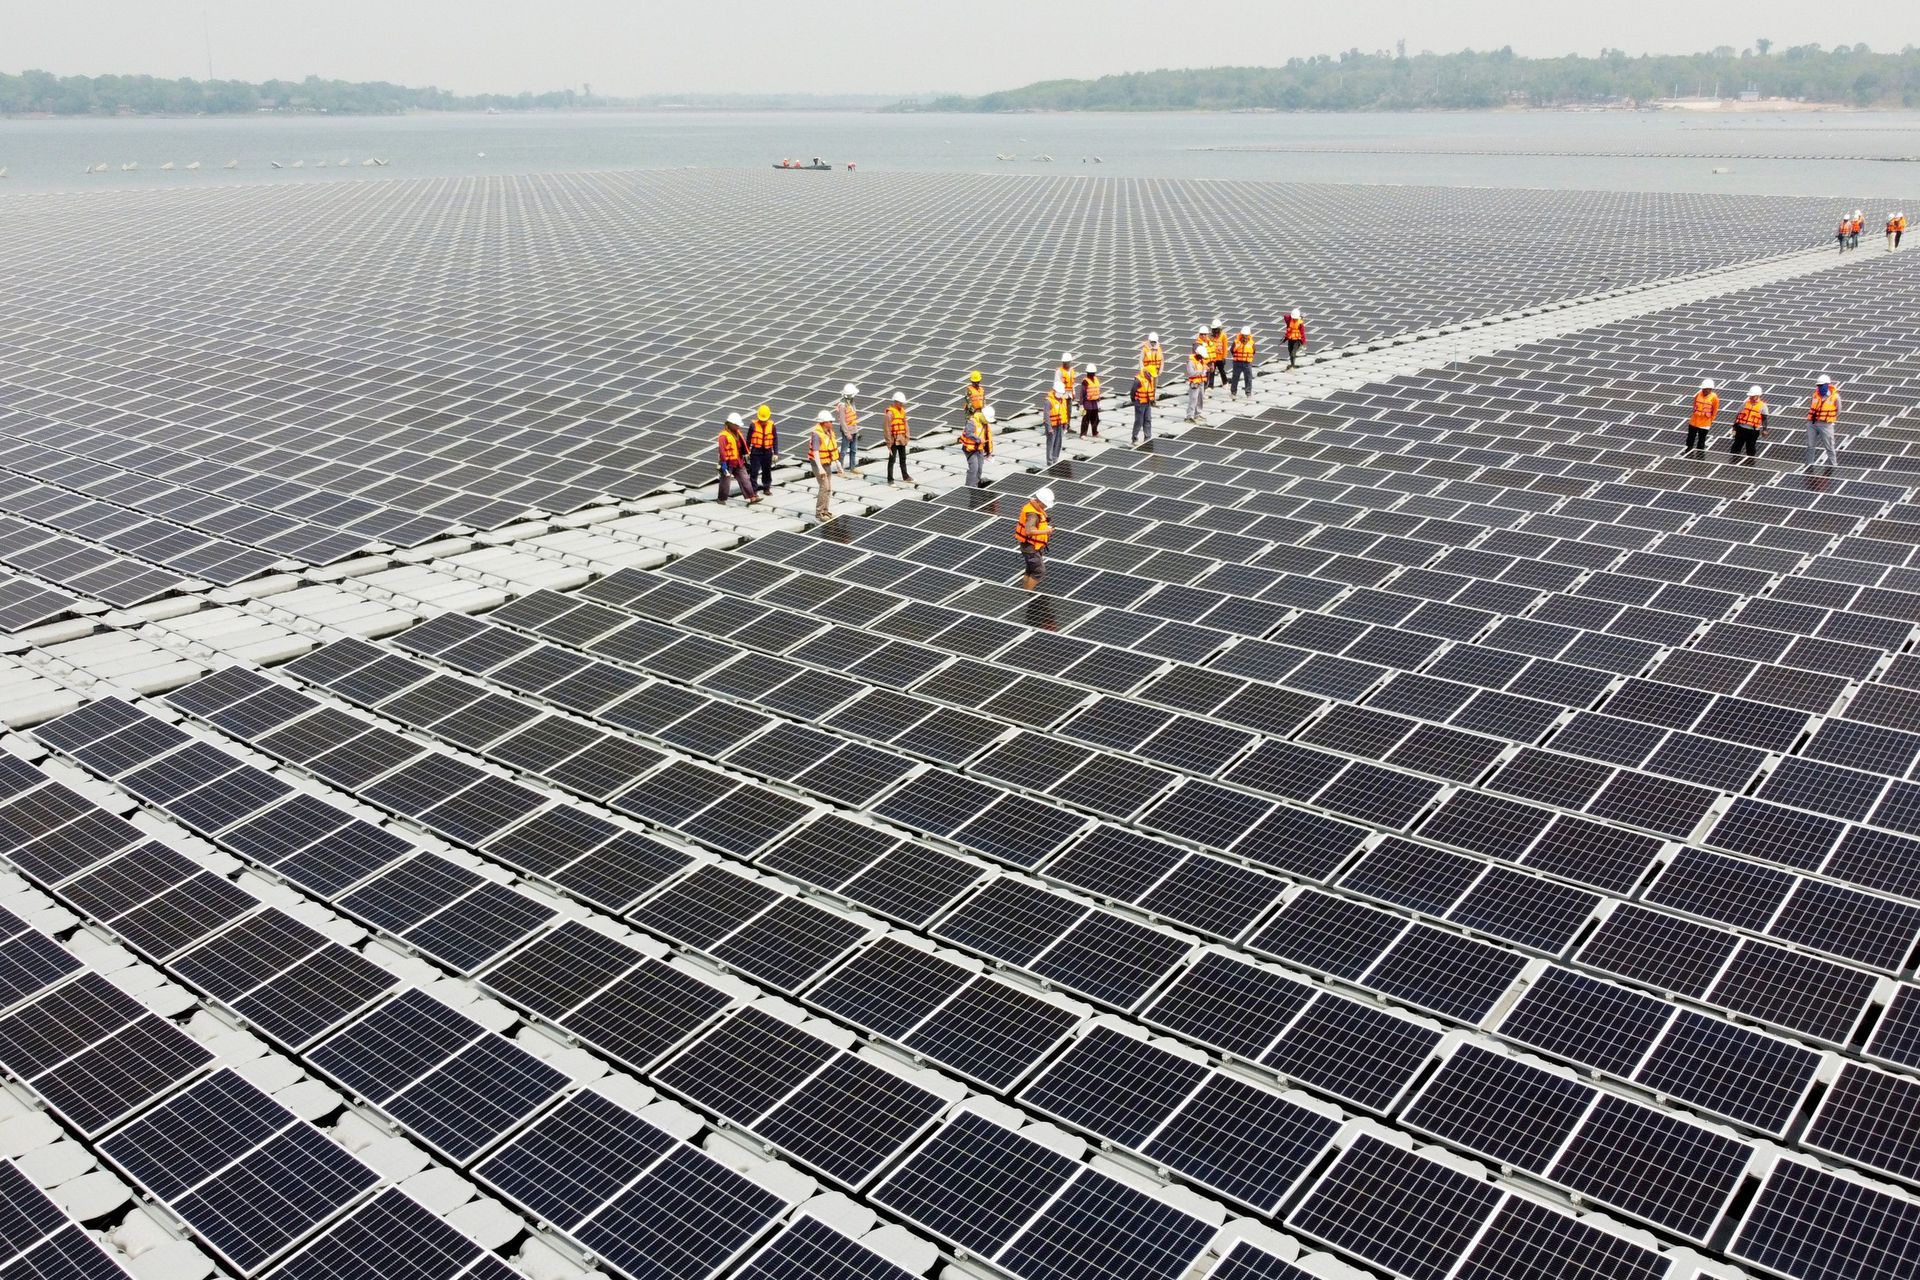 Trang trại điện mặt trời nổi trên mặt nước rộng bằng 70 sân Mỹ Đình tại Thái Lan - Ảnh 1.